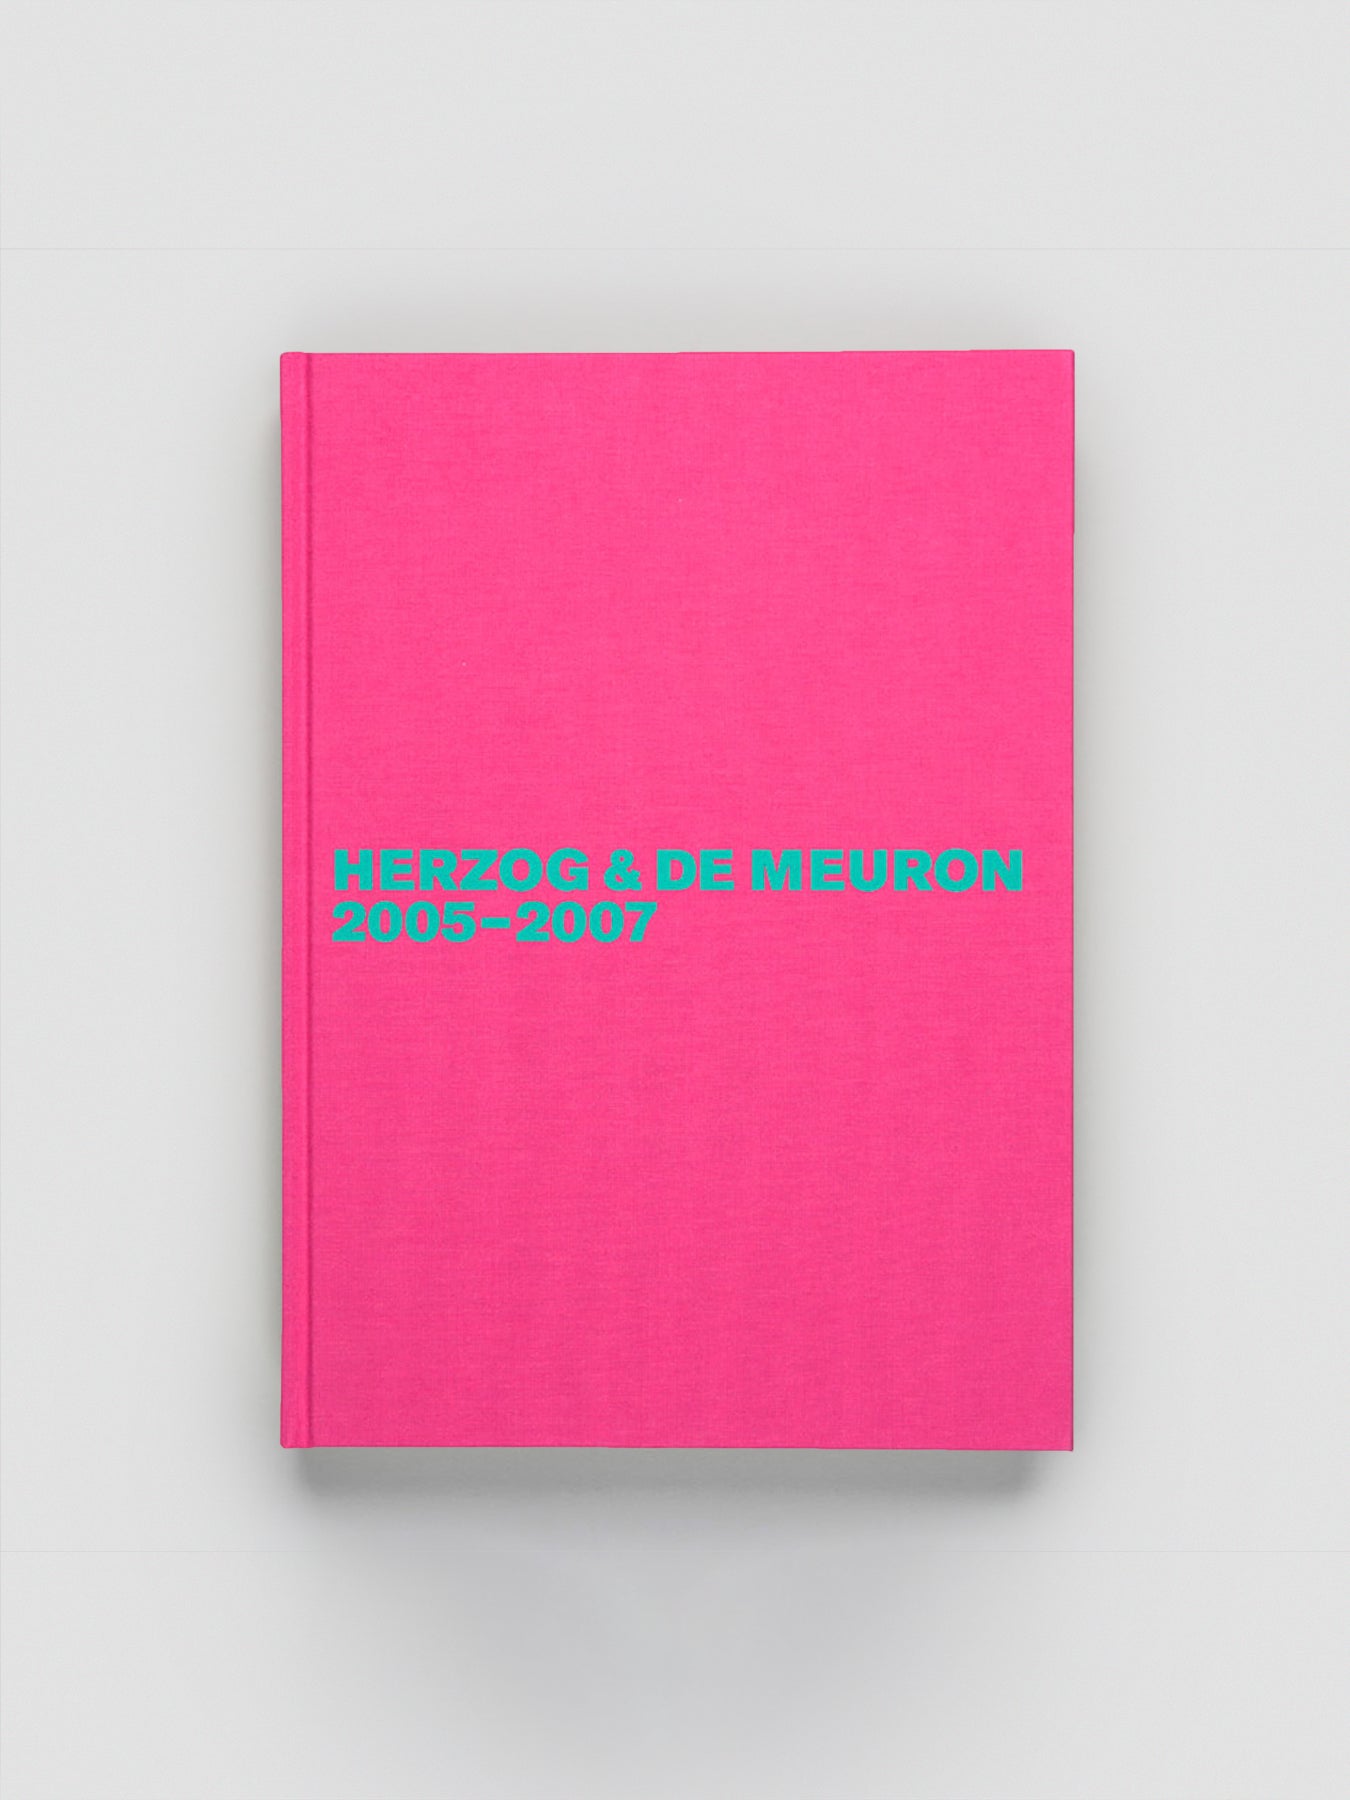 Herzog & de Meuron 2005-2007 Volume 6